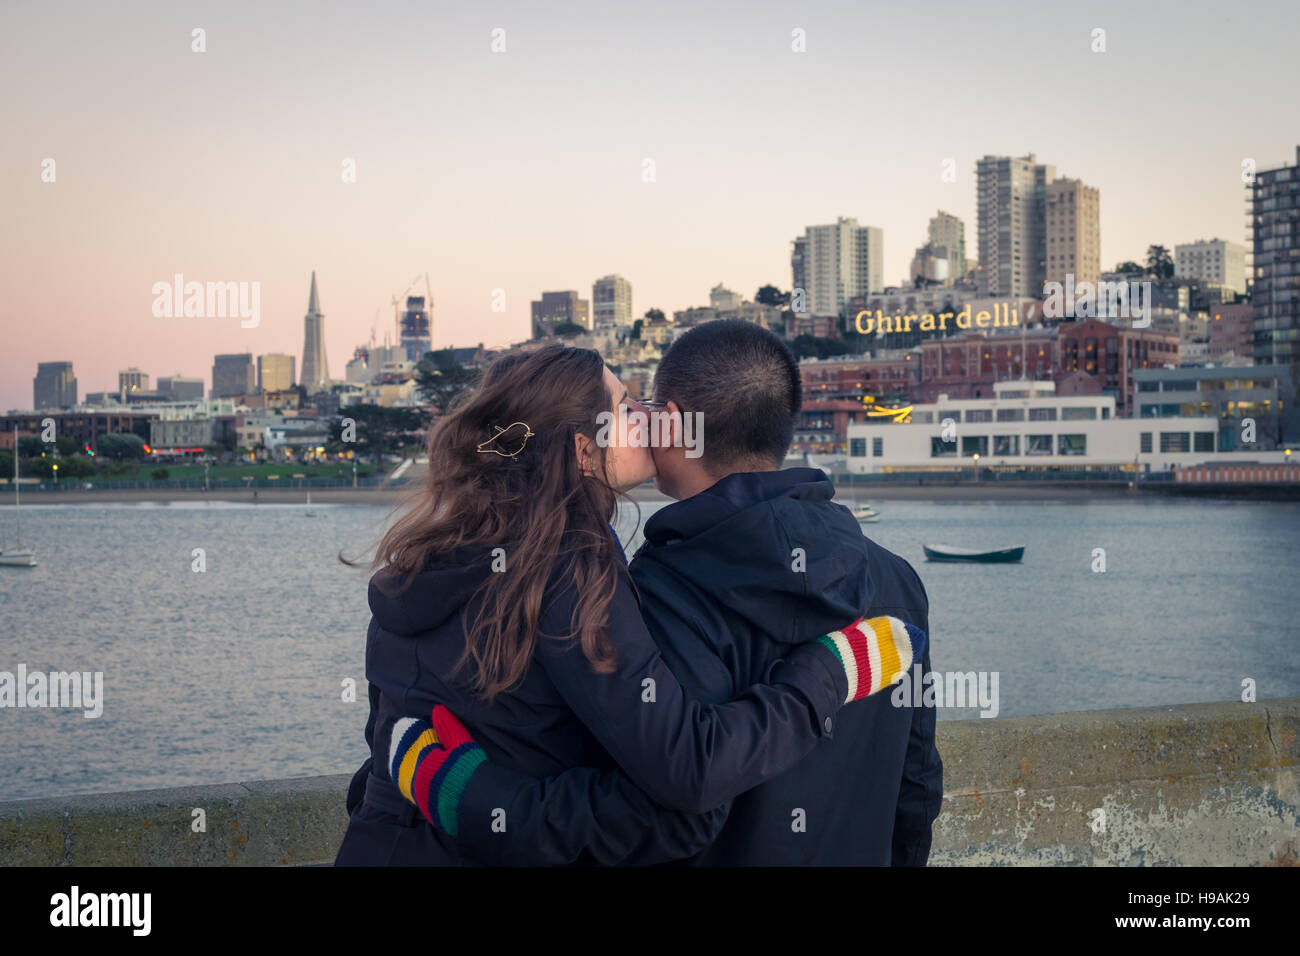 Ein junges Paar in Liebe am Aquatic Park Pier mit der Skyline von Aquatic Park Badehaus, Ghirardelli Square und San Francisco. Stockfoto